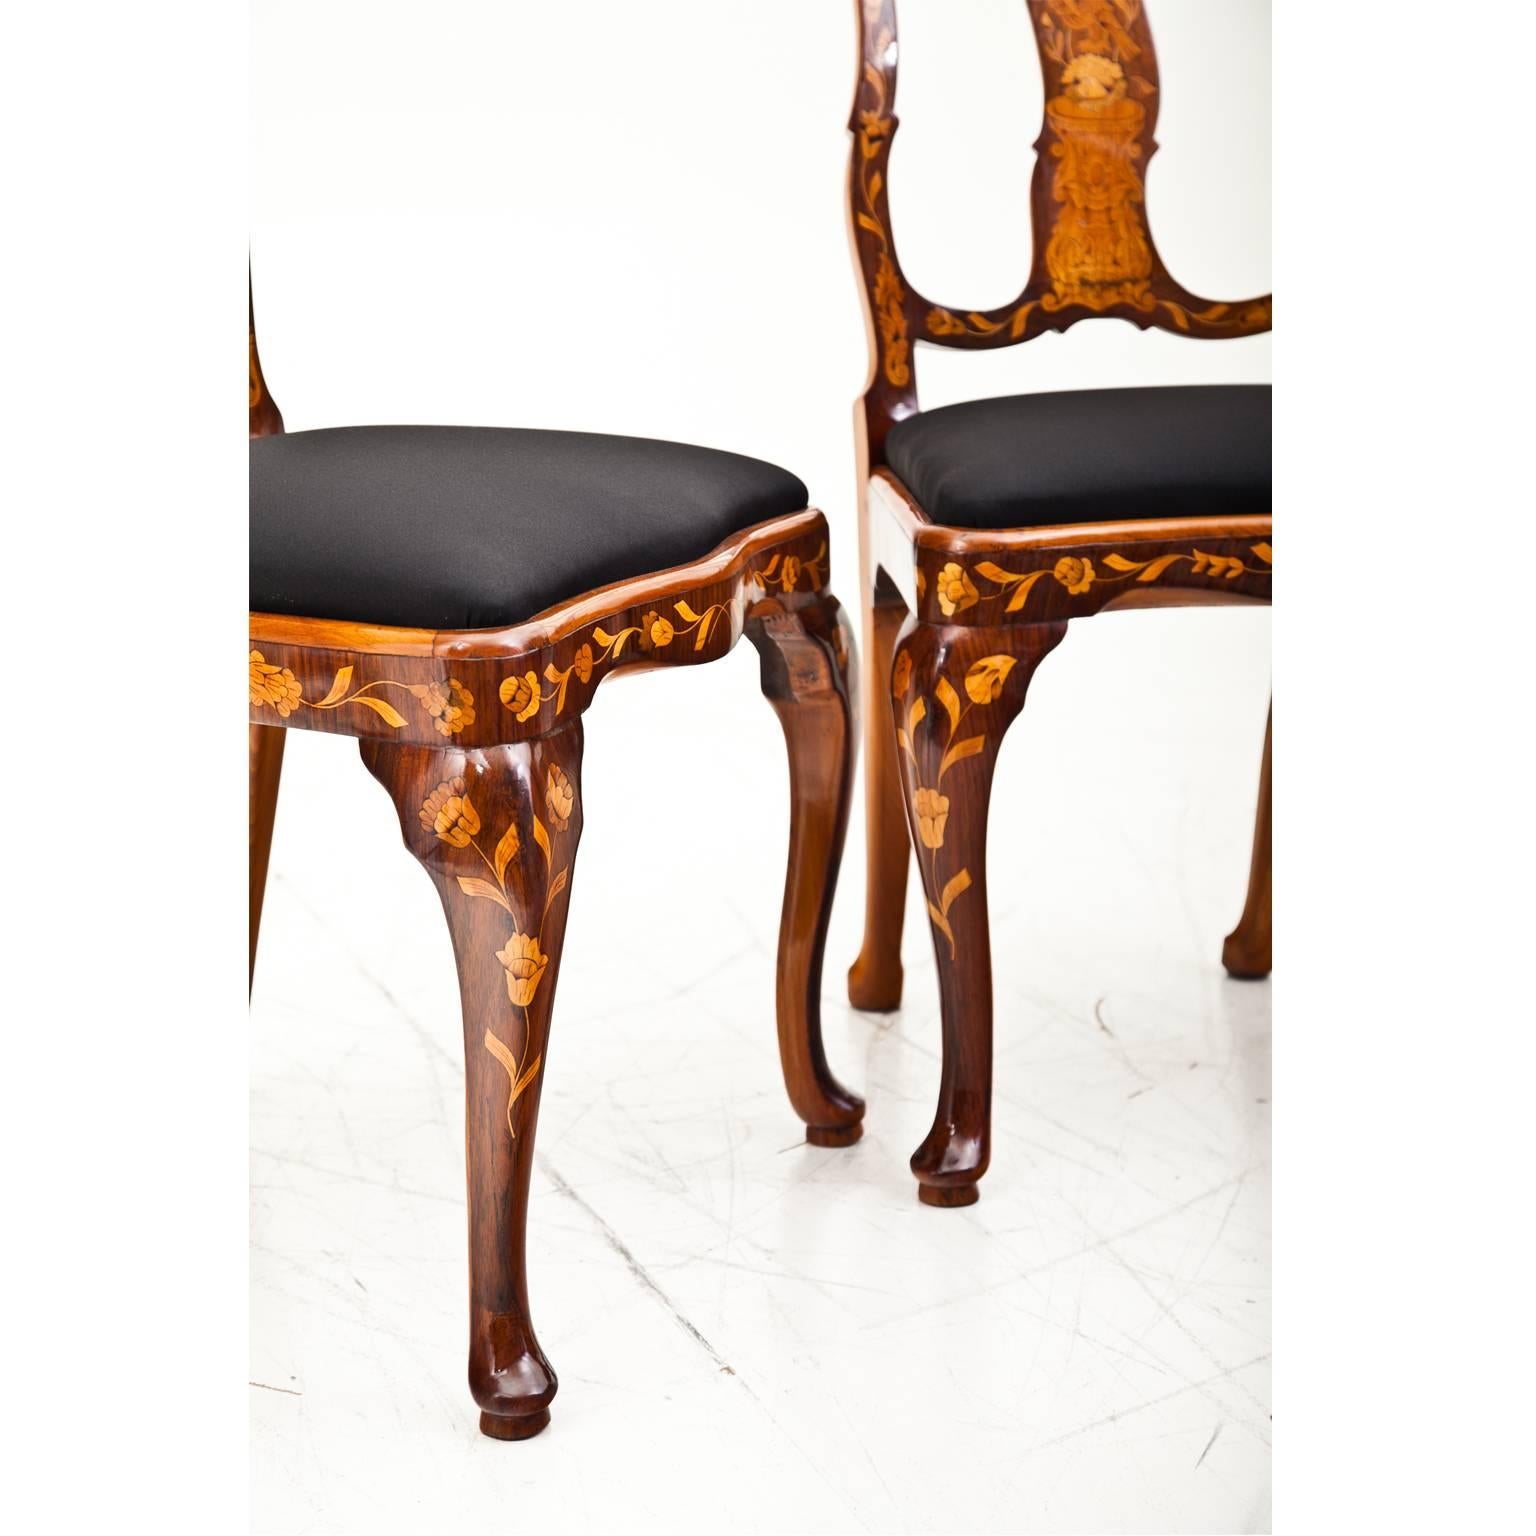 Dutch Baroque Chairs, 18th Century (Intarsie)